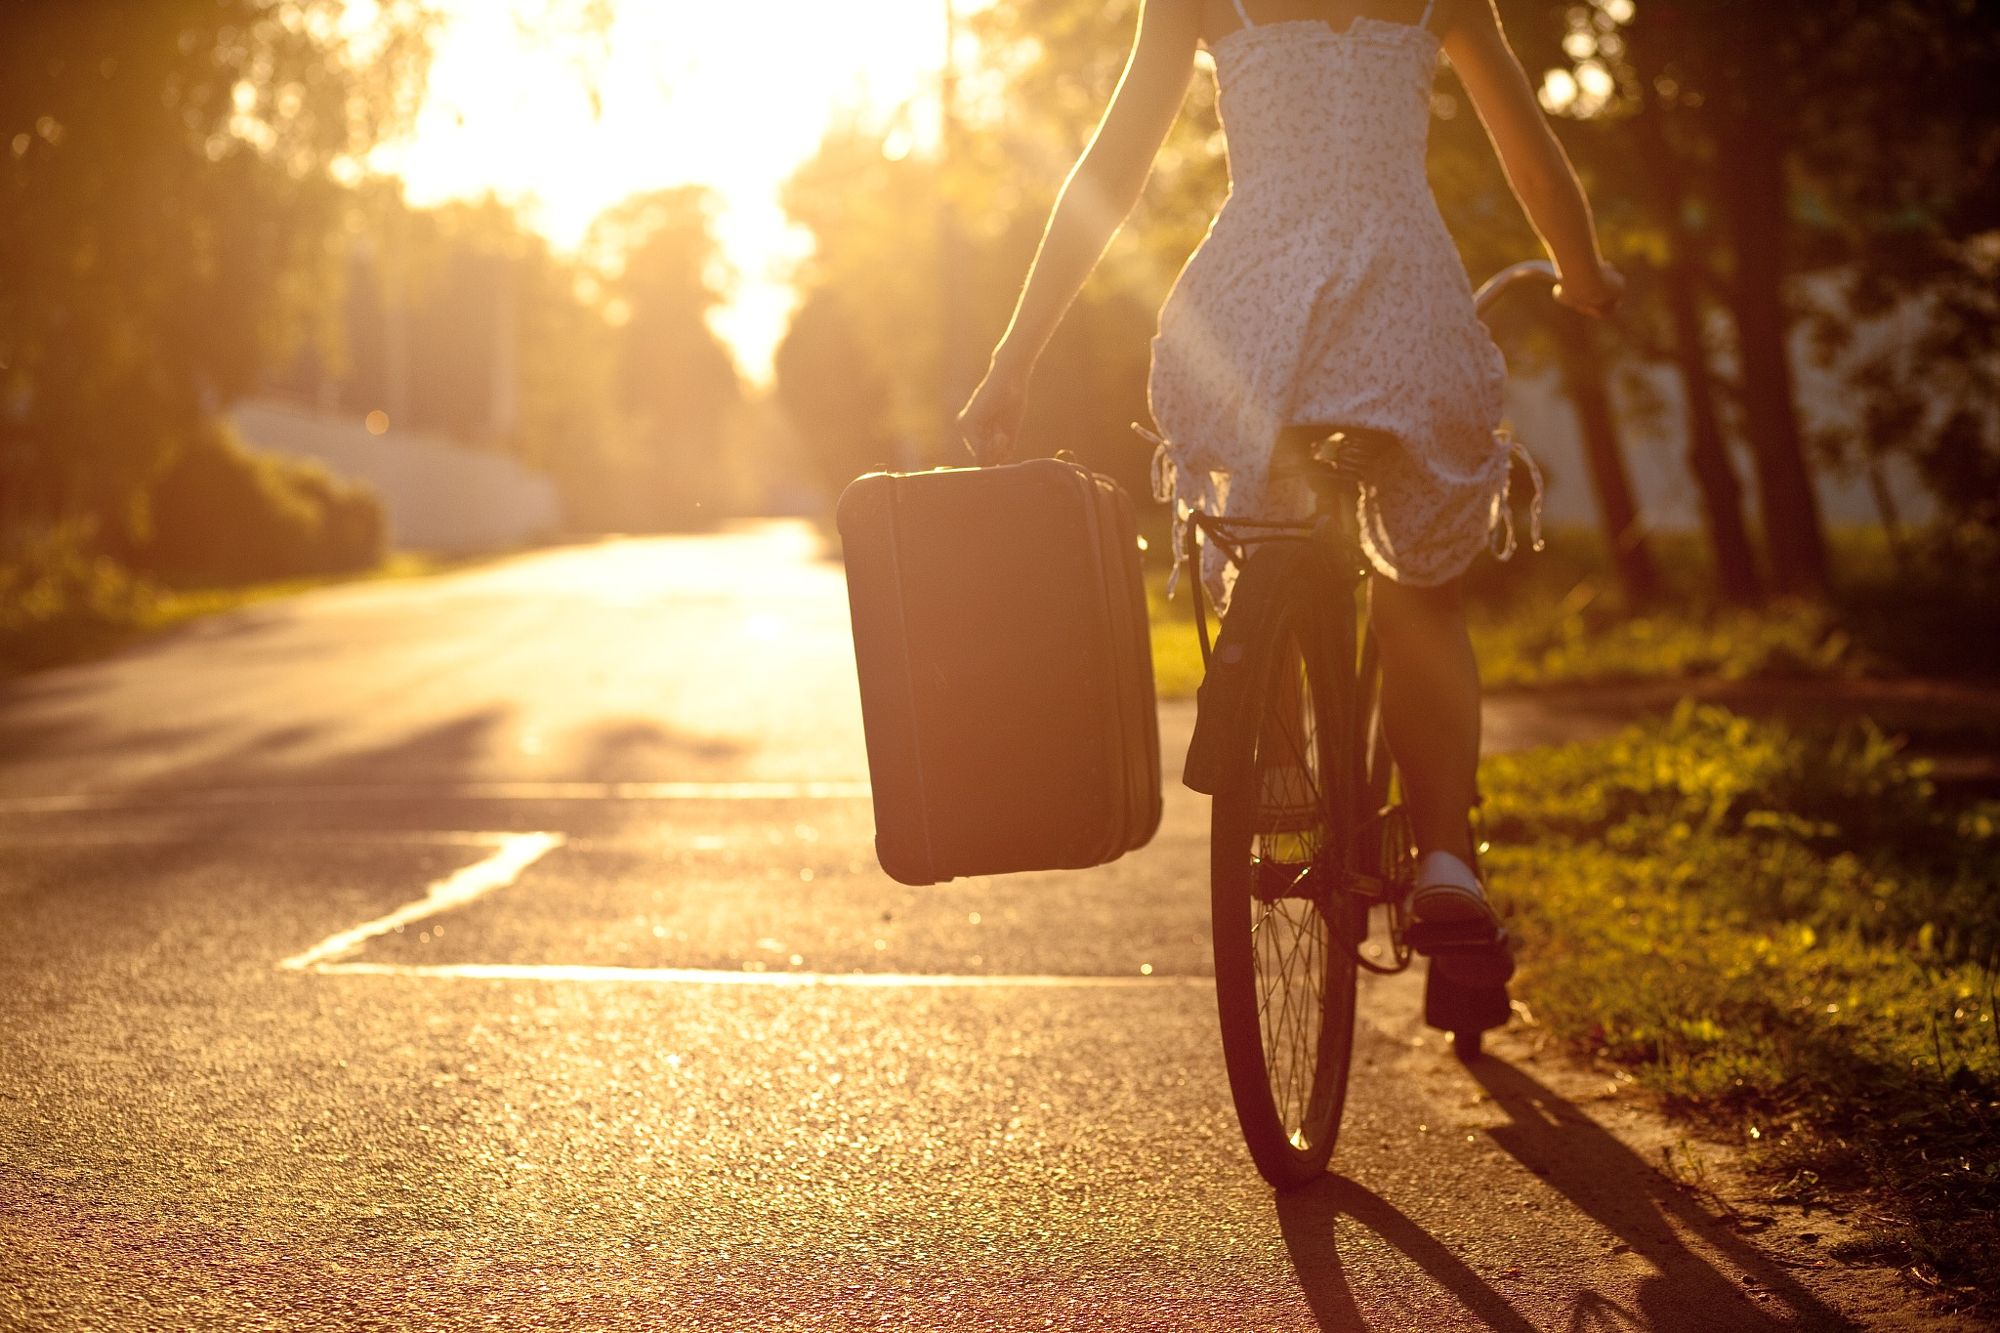 Девушка на велосипеде фото сзади по дороге